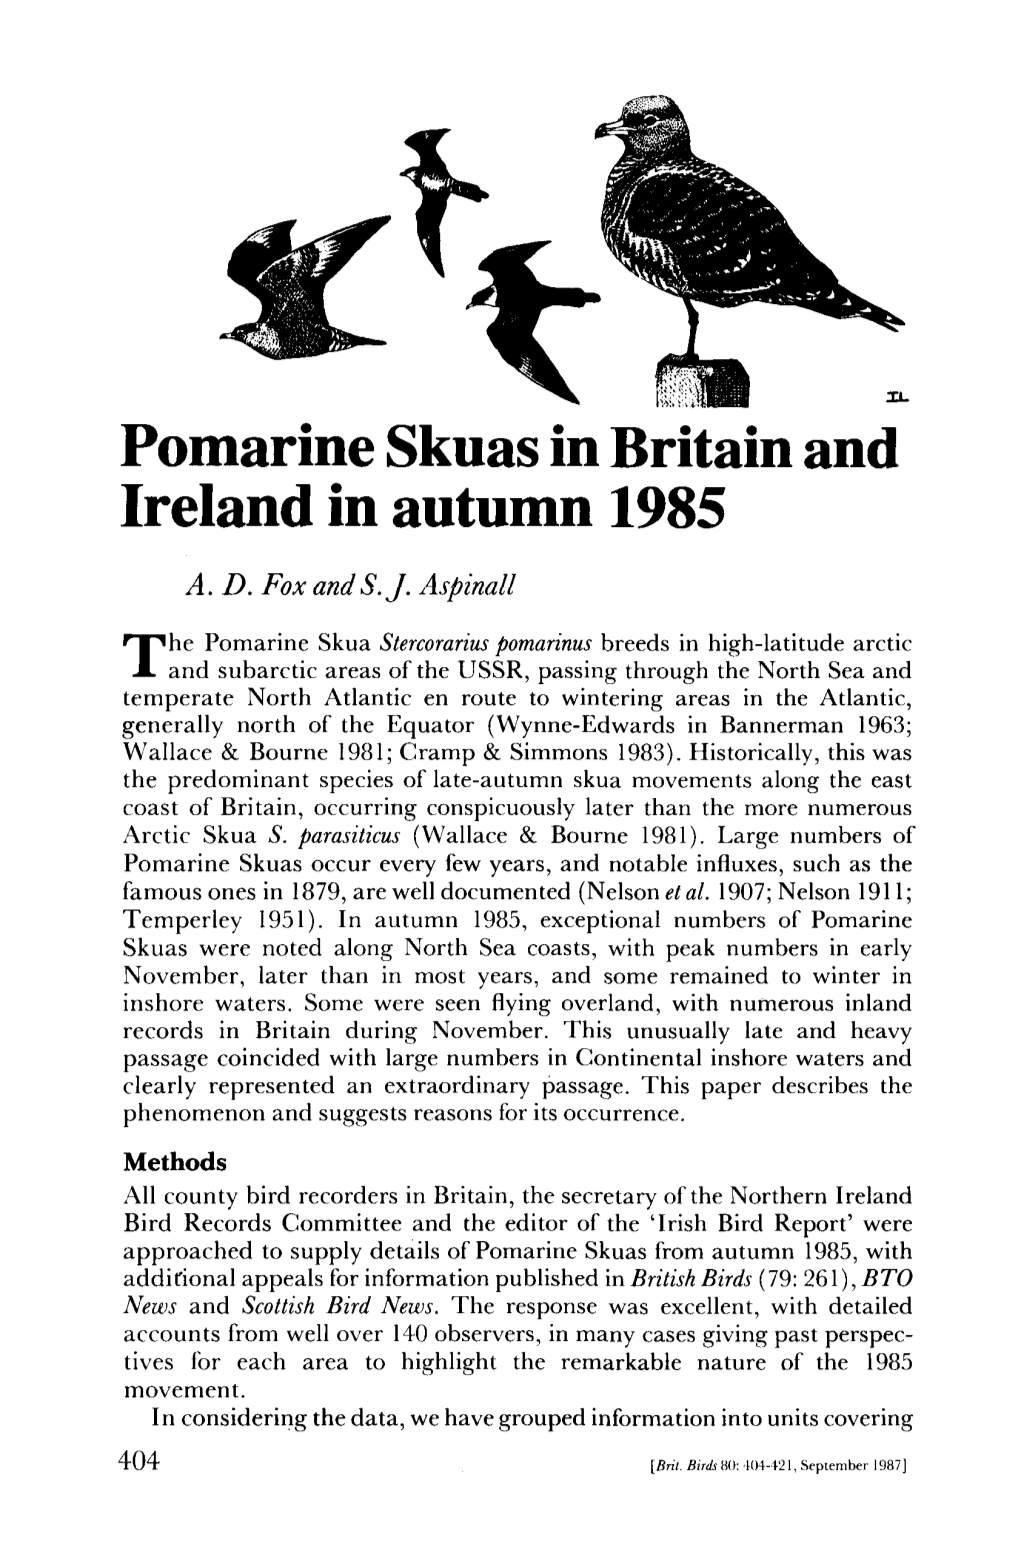 Pomarine Skuas in Britain and Ireland in Autumn 1985